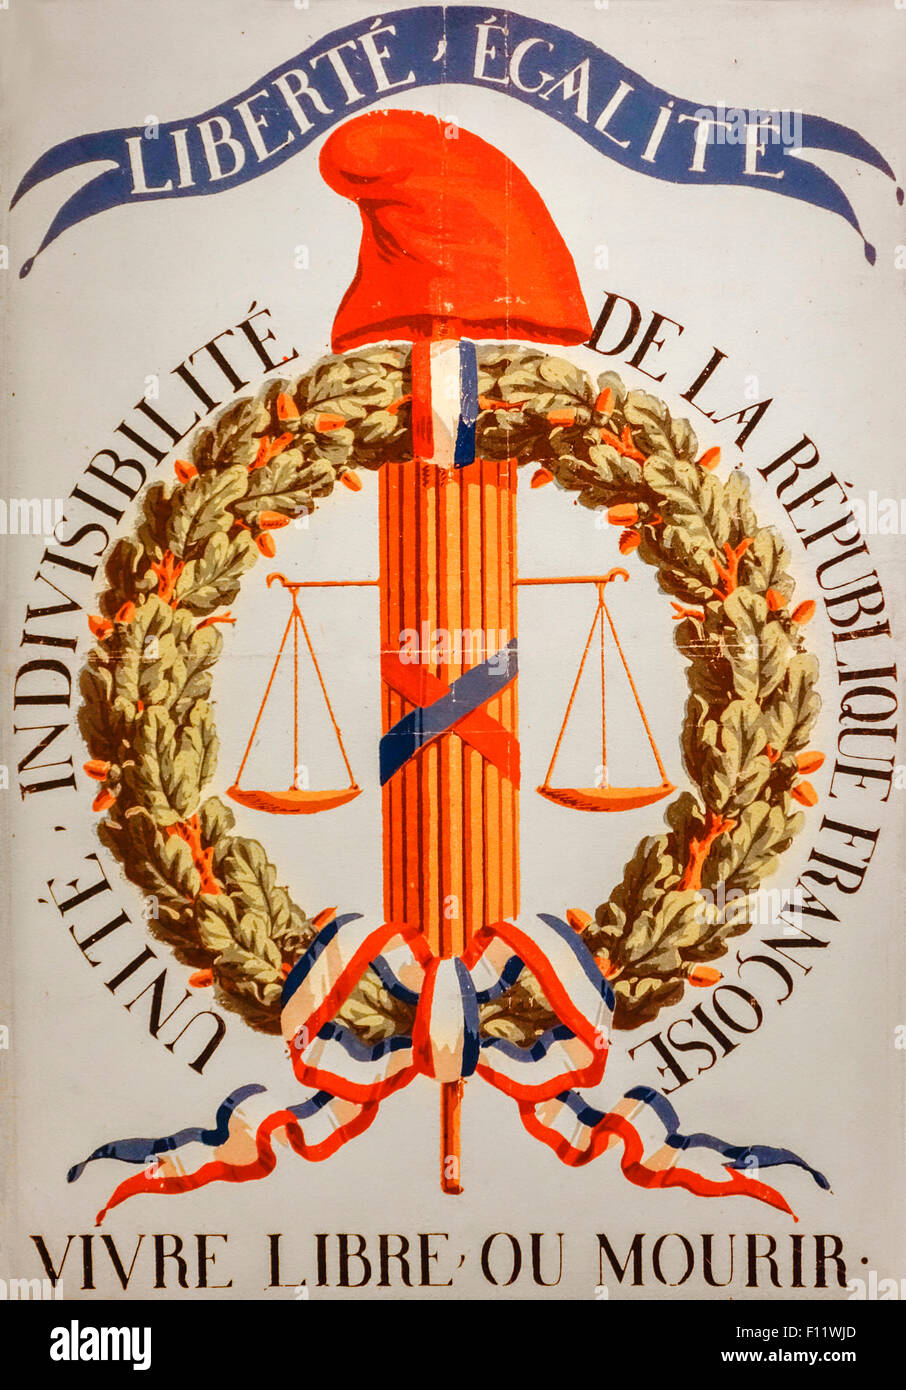 Liberté égalité et Vivre libre ou mourir / Vivre libre ou mourir, la devise de la Révolution française sur poster Banque D'Images